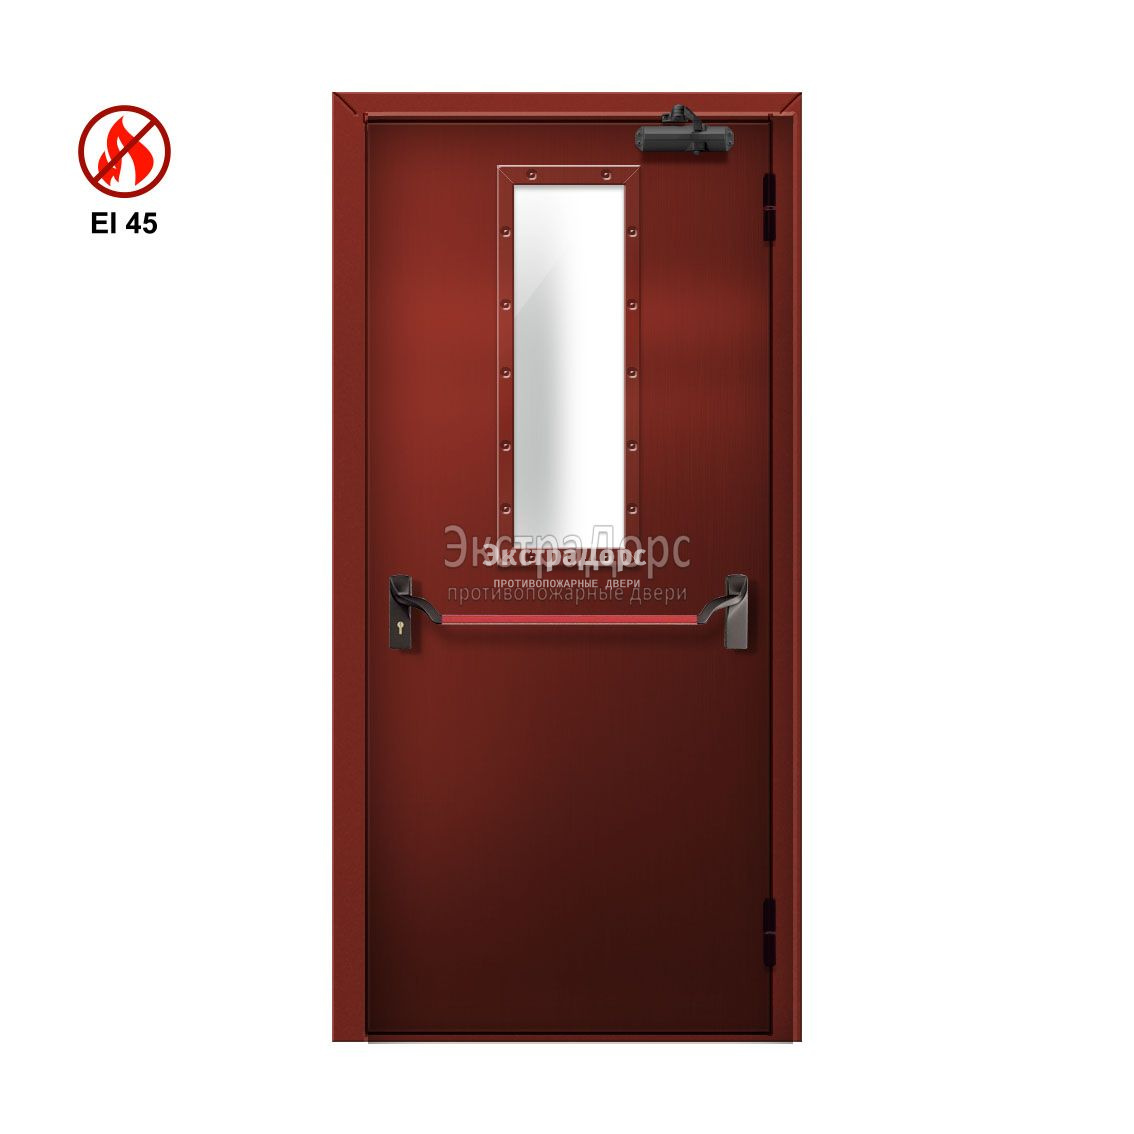 Противопожарная дверь EI 45 ДМП-01-EI45 ДП148 однопольная остекленная с антипаникой